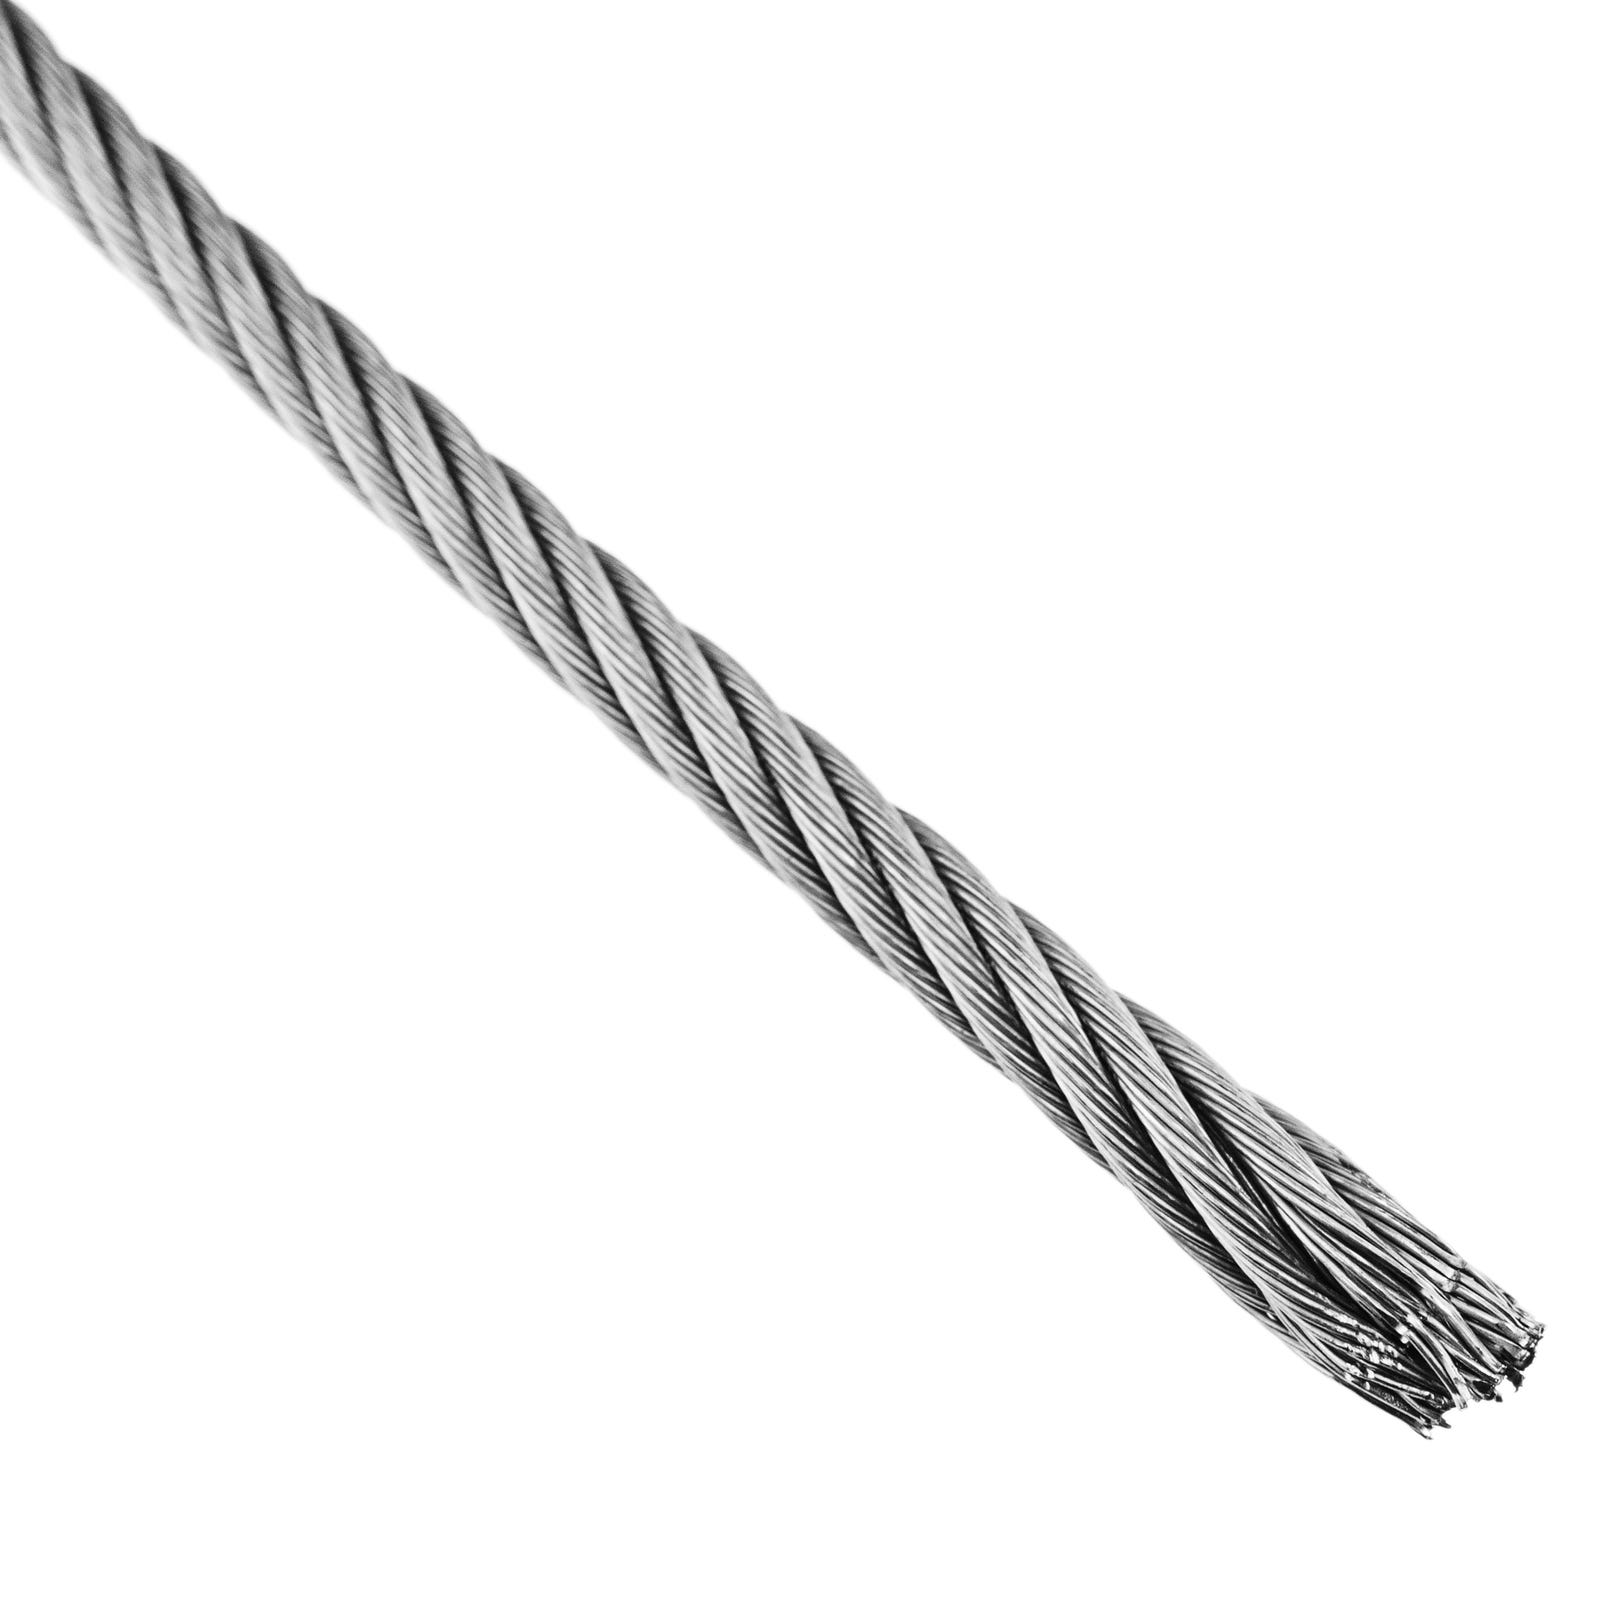 10m longueur 1.5 mm diamètre en acier inoxydable 304 Cable